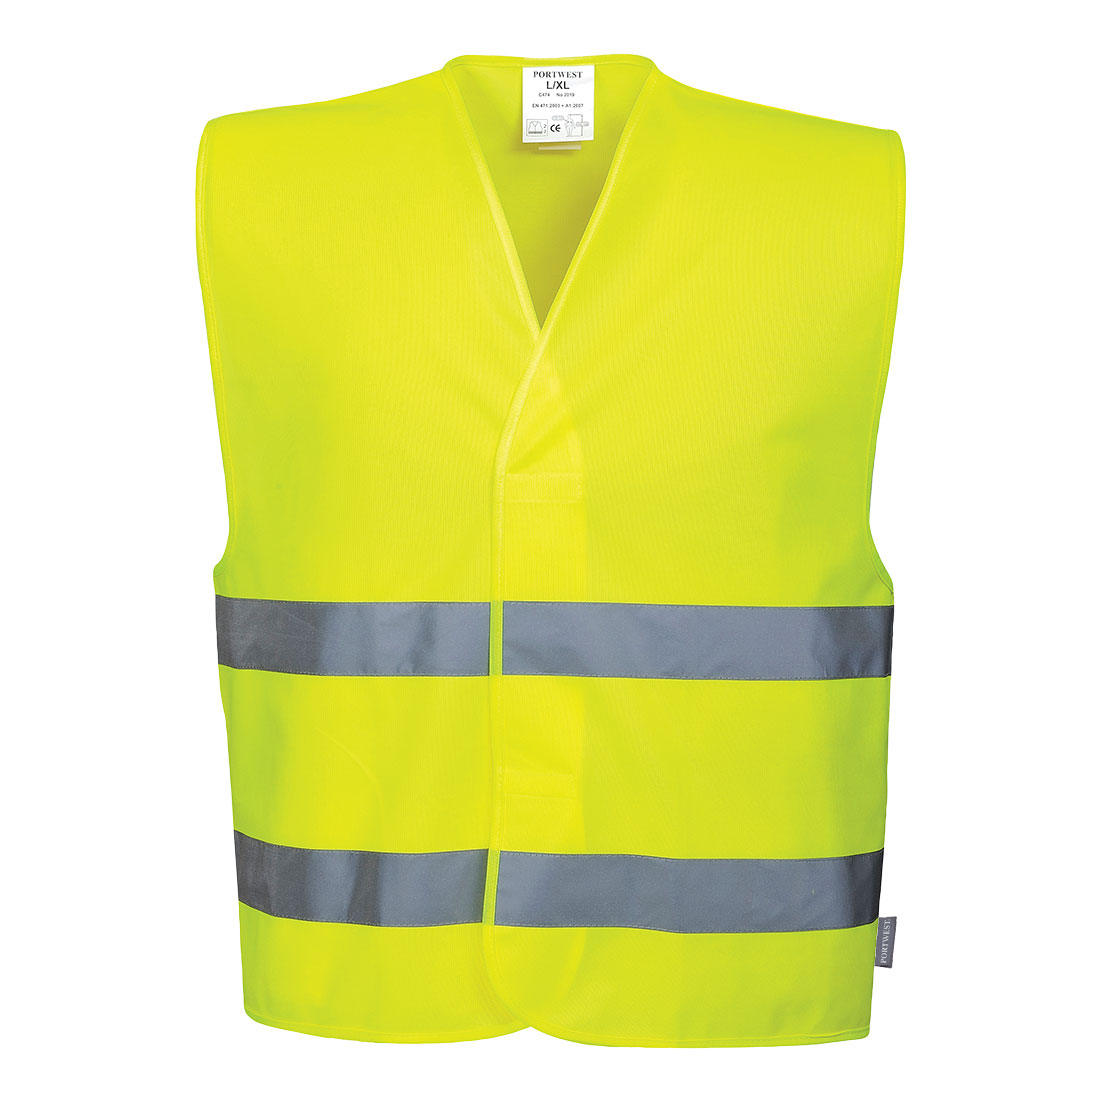 Reflexní vesta s dvěma pruhy Barva: žlutá, Velikost: L/XL